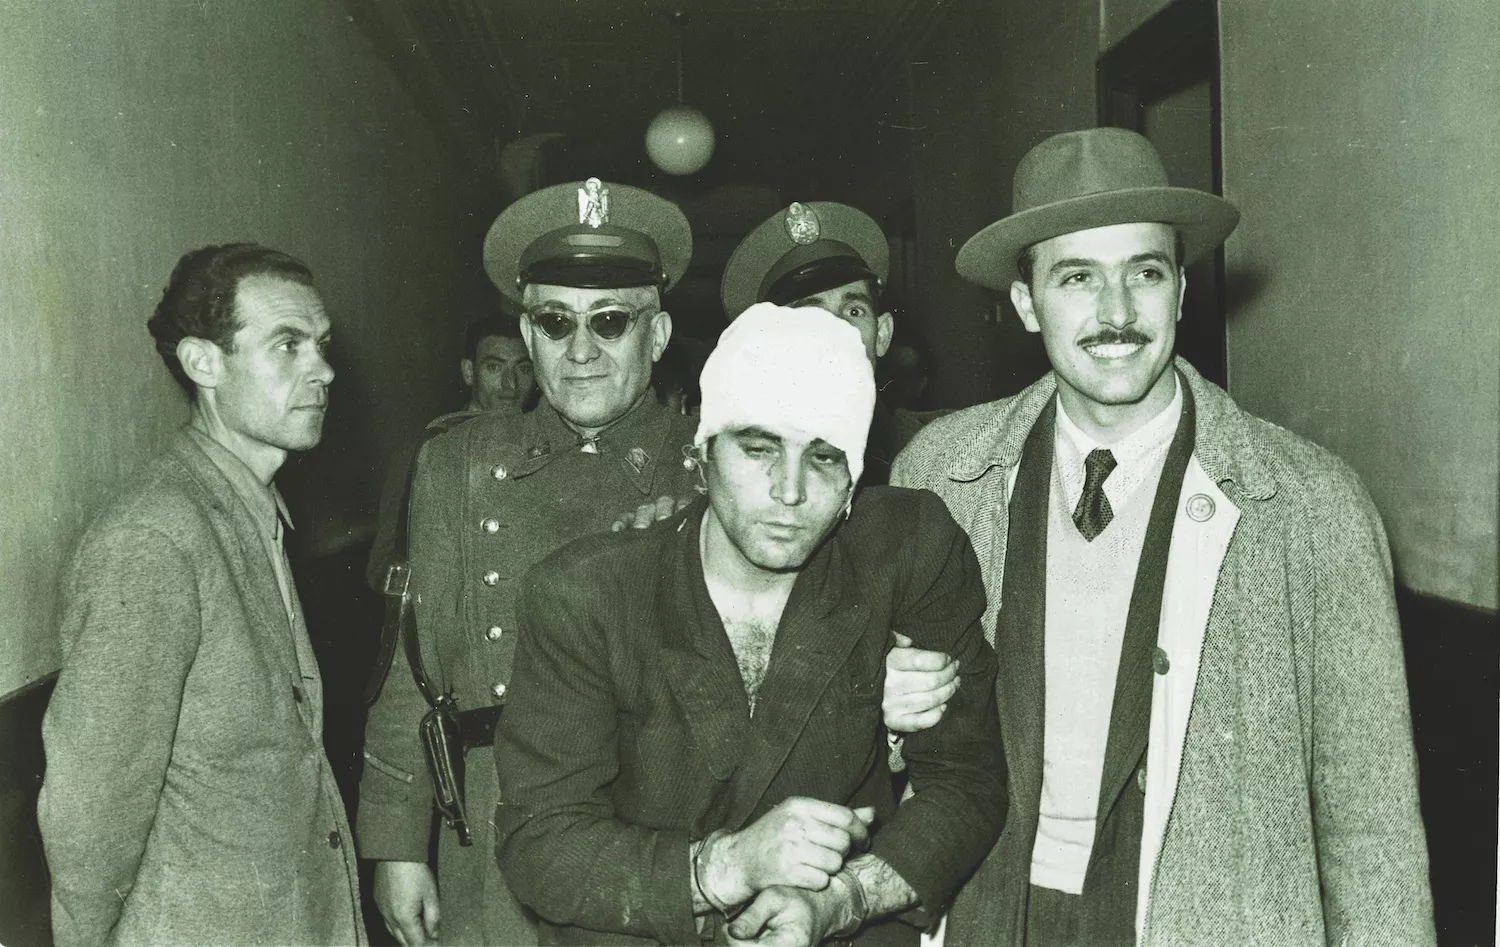 L’atracador Enrique Sánchez Roldán, ‘el Mula’ va ser detingut per la policia després de matar un agent i un taxista el 17 de febrer del 1954